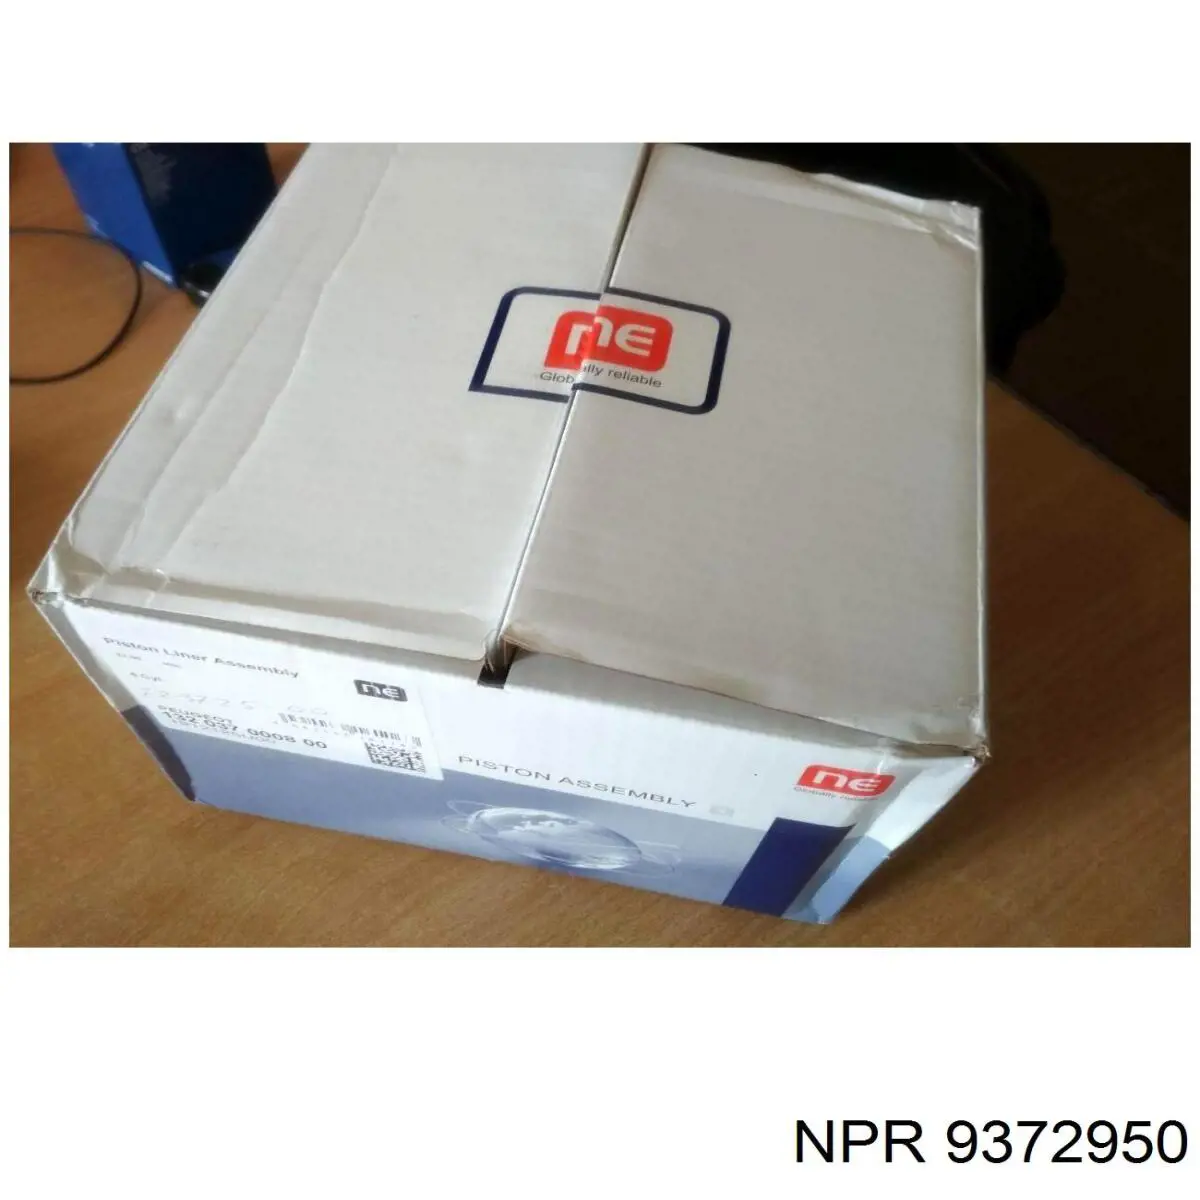 9372950 NE/NPR juego de aros de pistón para 1 cilindro, cota de reparación +0,50 mm